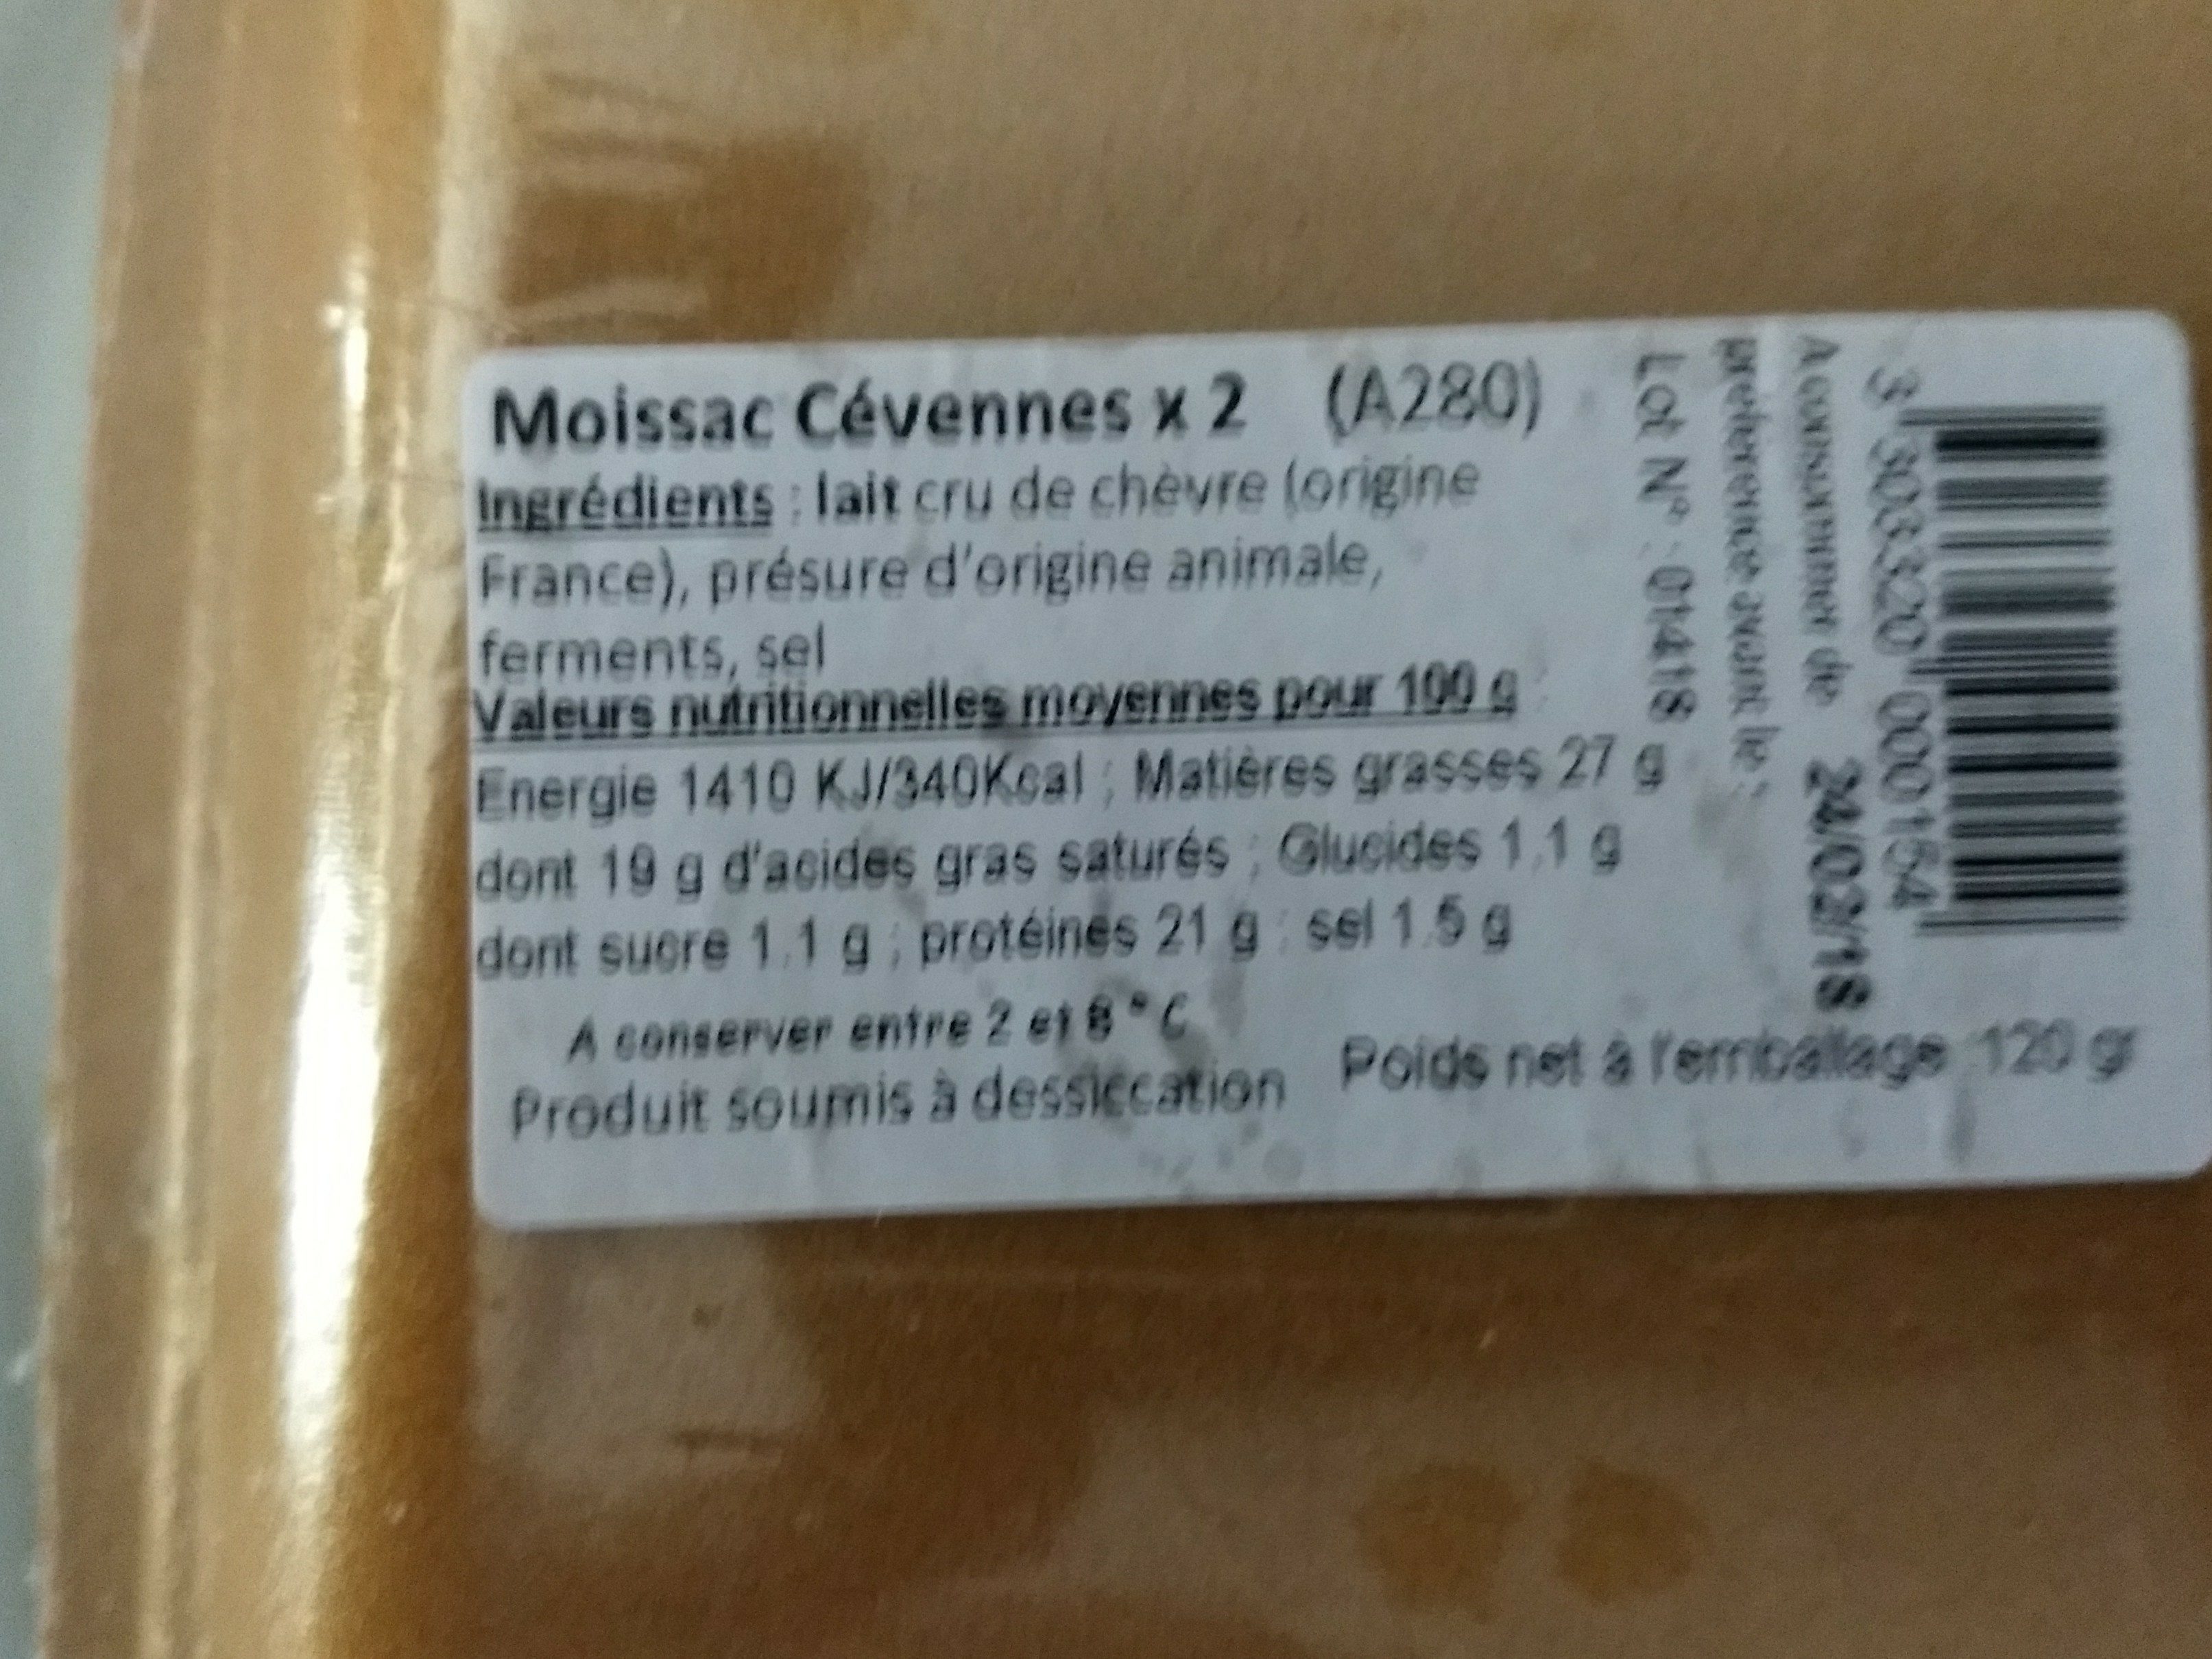 Le moissac des Cévennes - Ingredients - fr